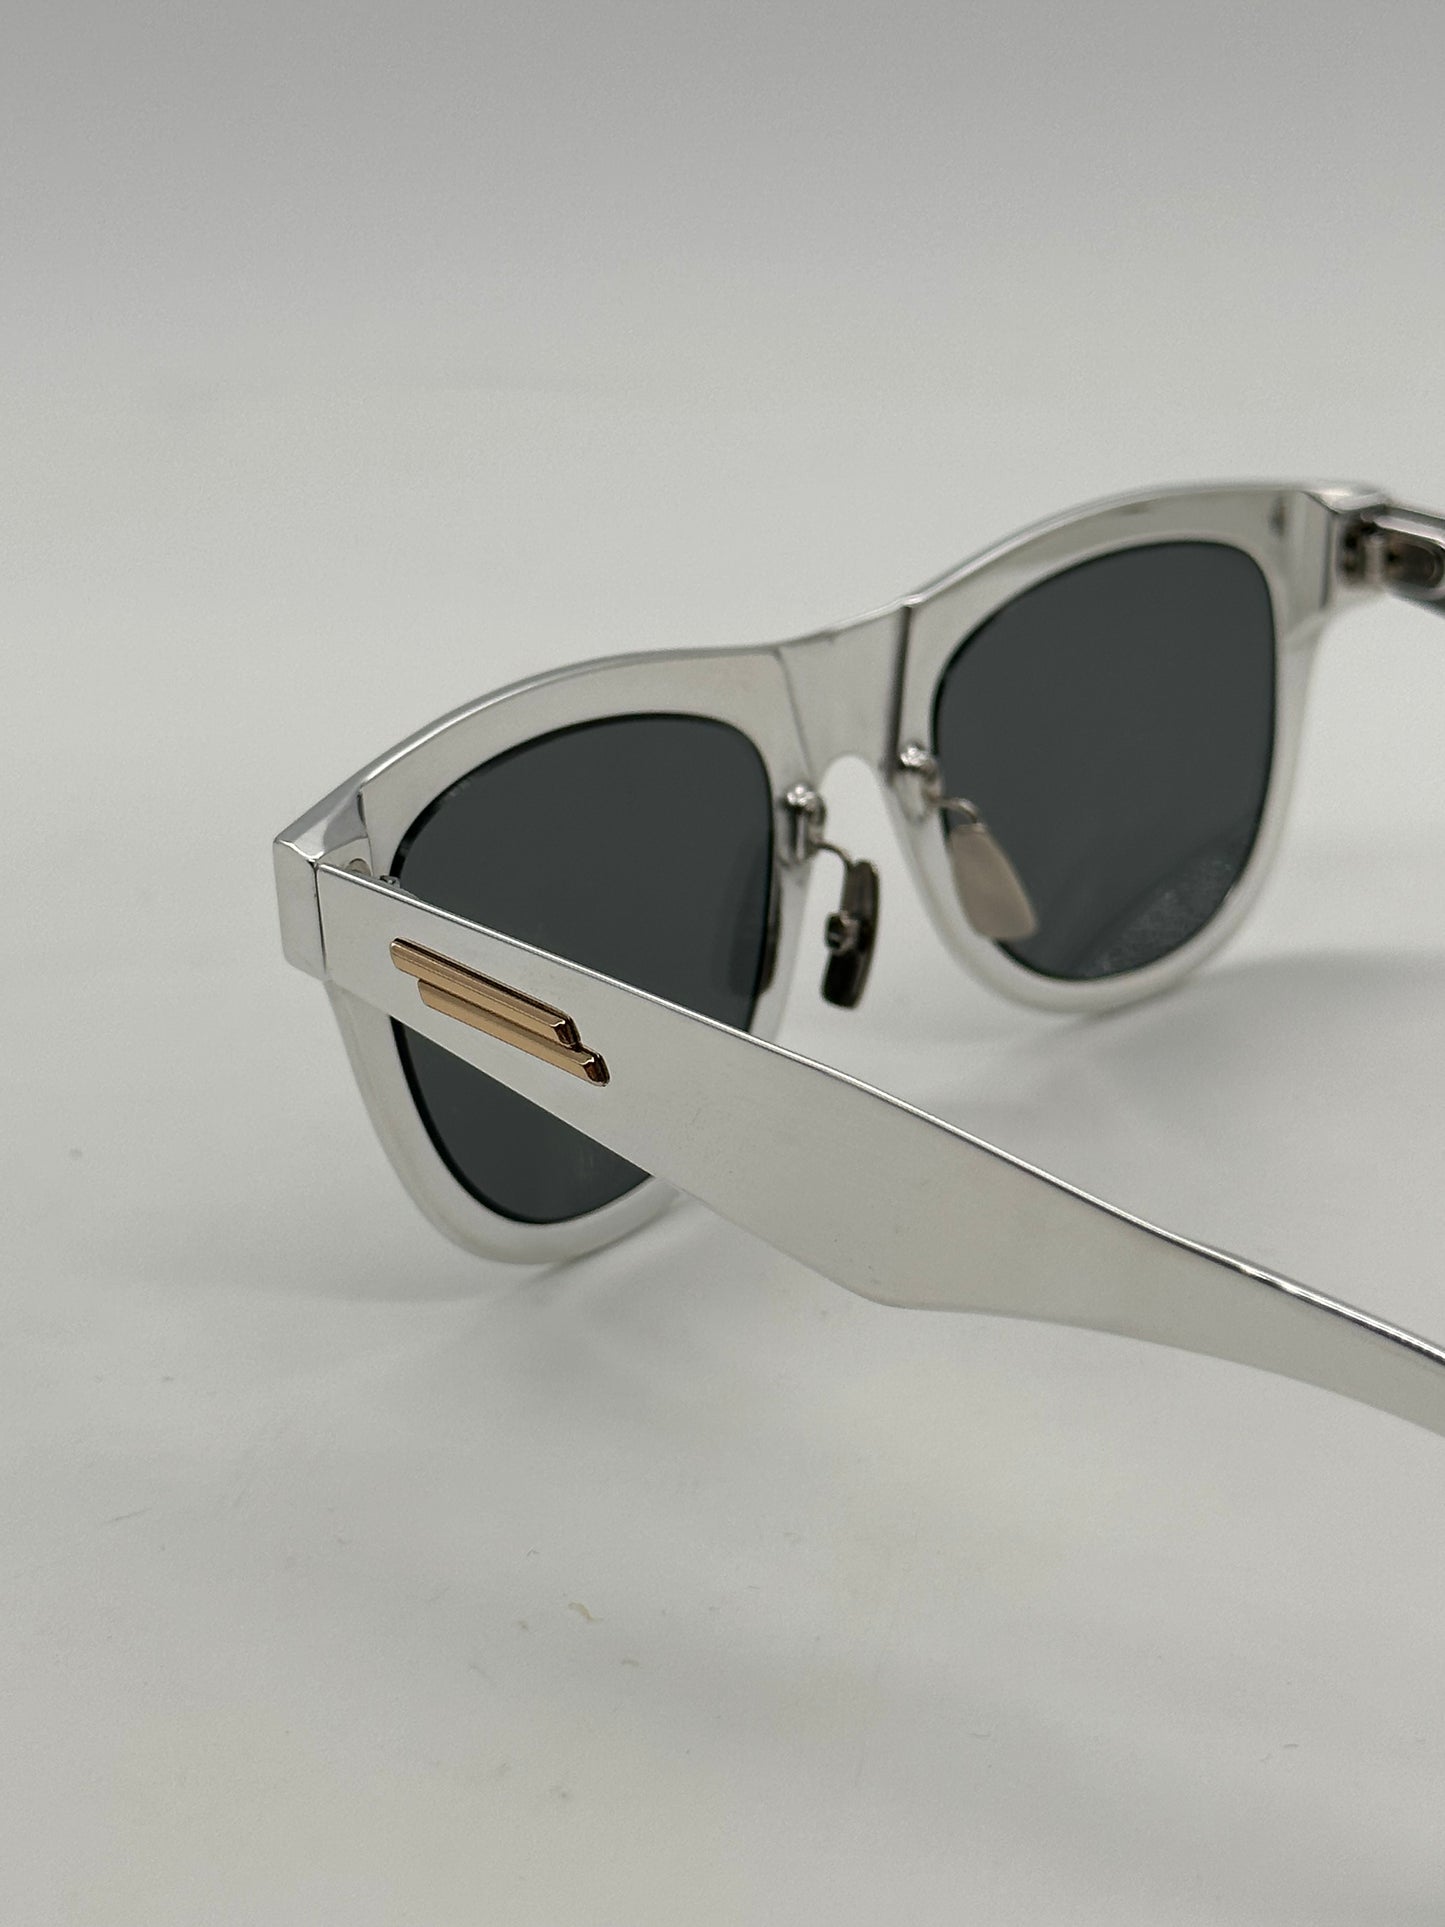 Silver Mirror Sunglasses